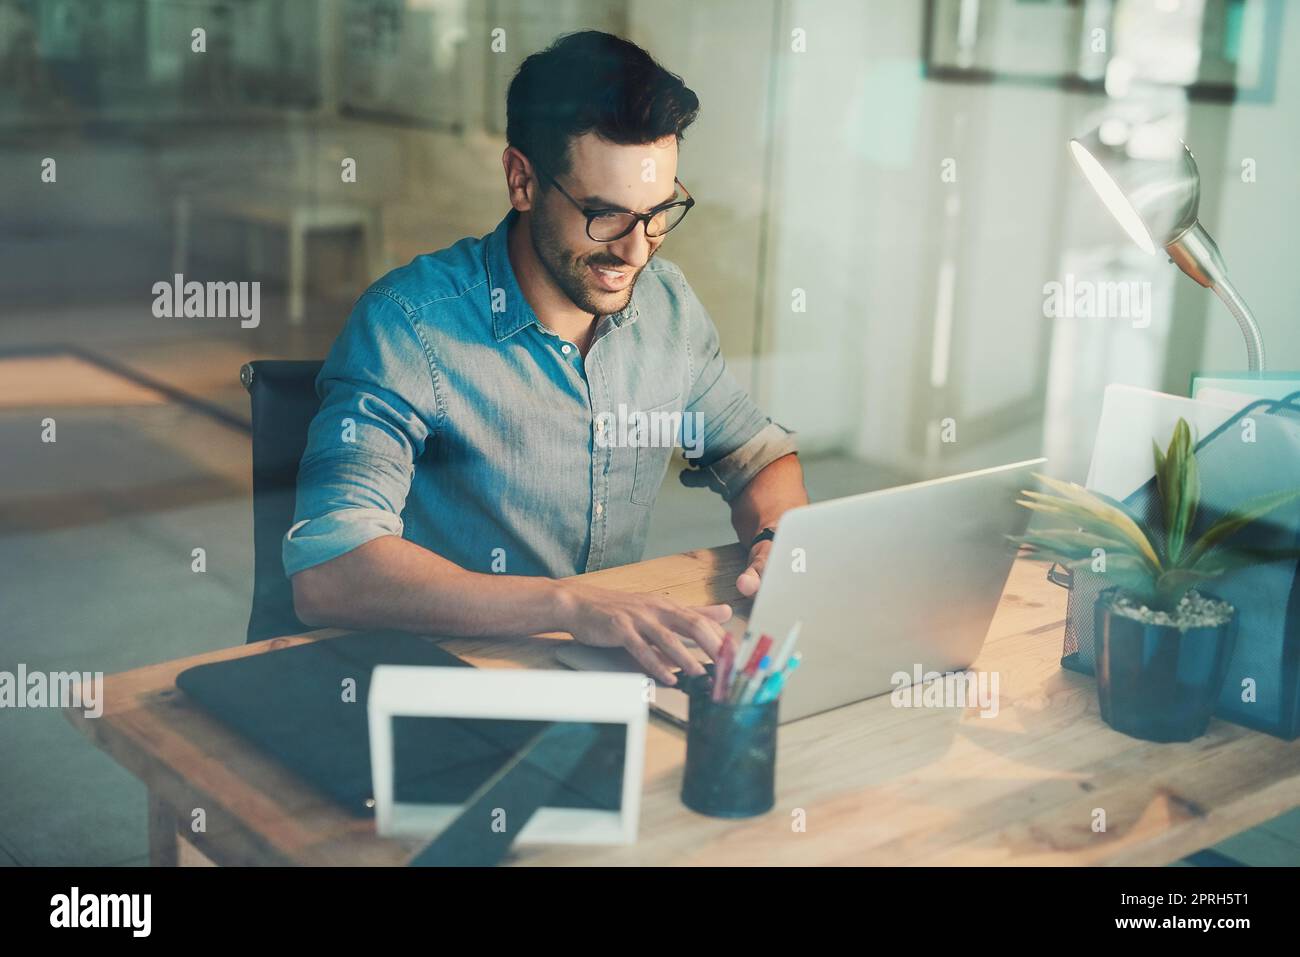 Travailler dur pour ceux de retour à la maison. Photo en grand angle d'un homme d'affaires travaillant sur son ordinateur portable au bureau. Banque D'Images